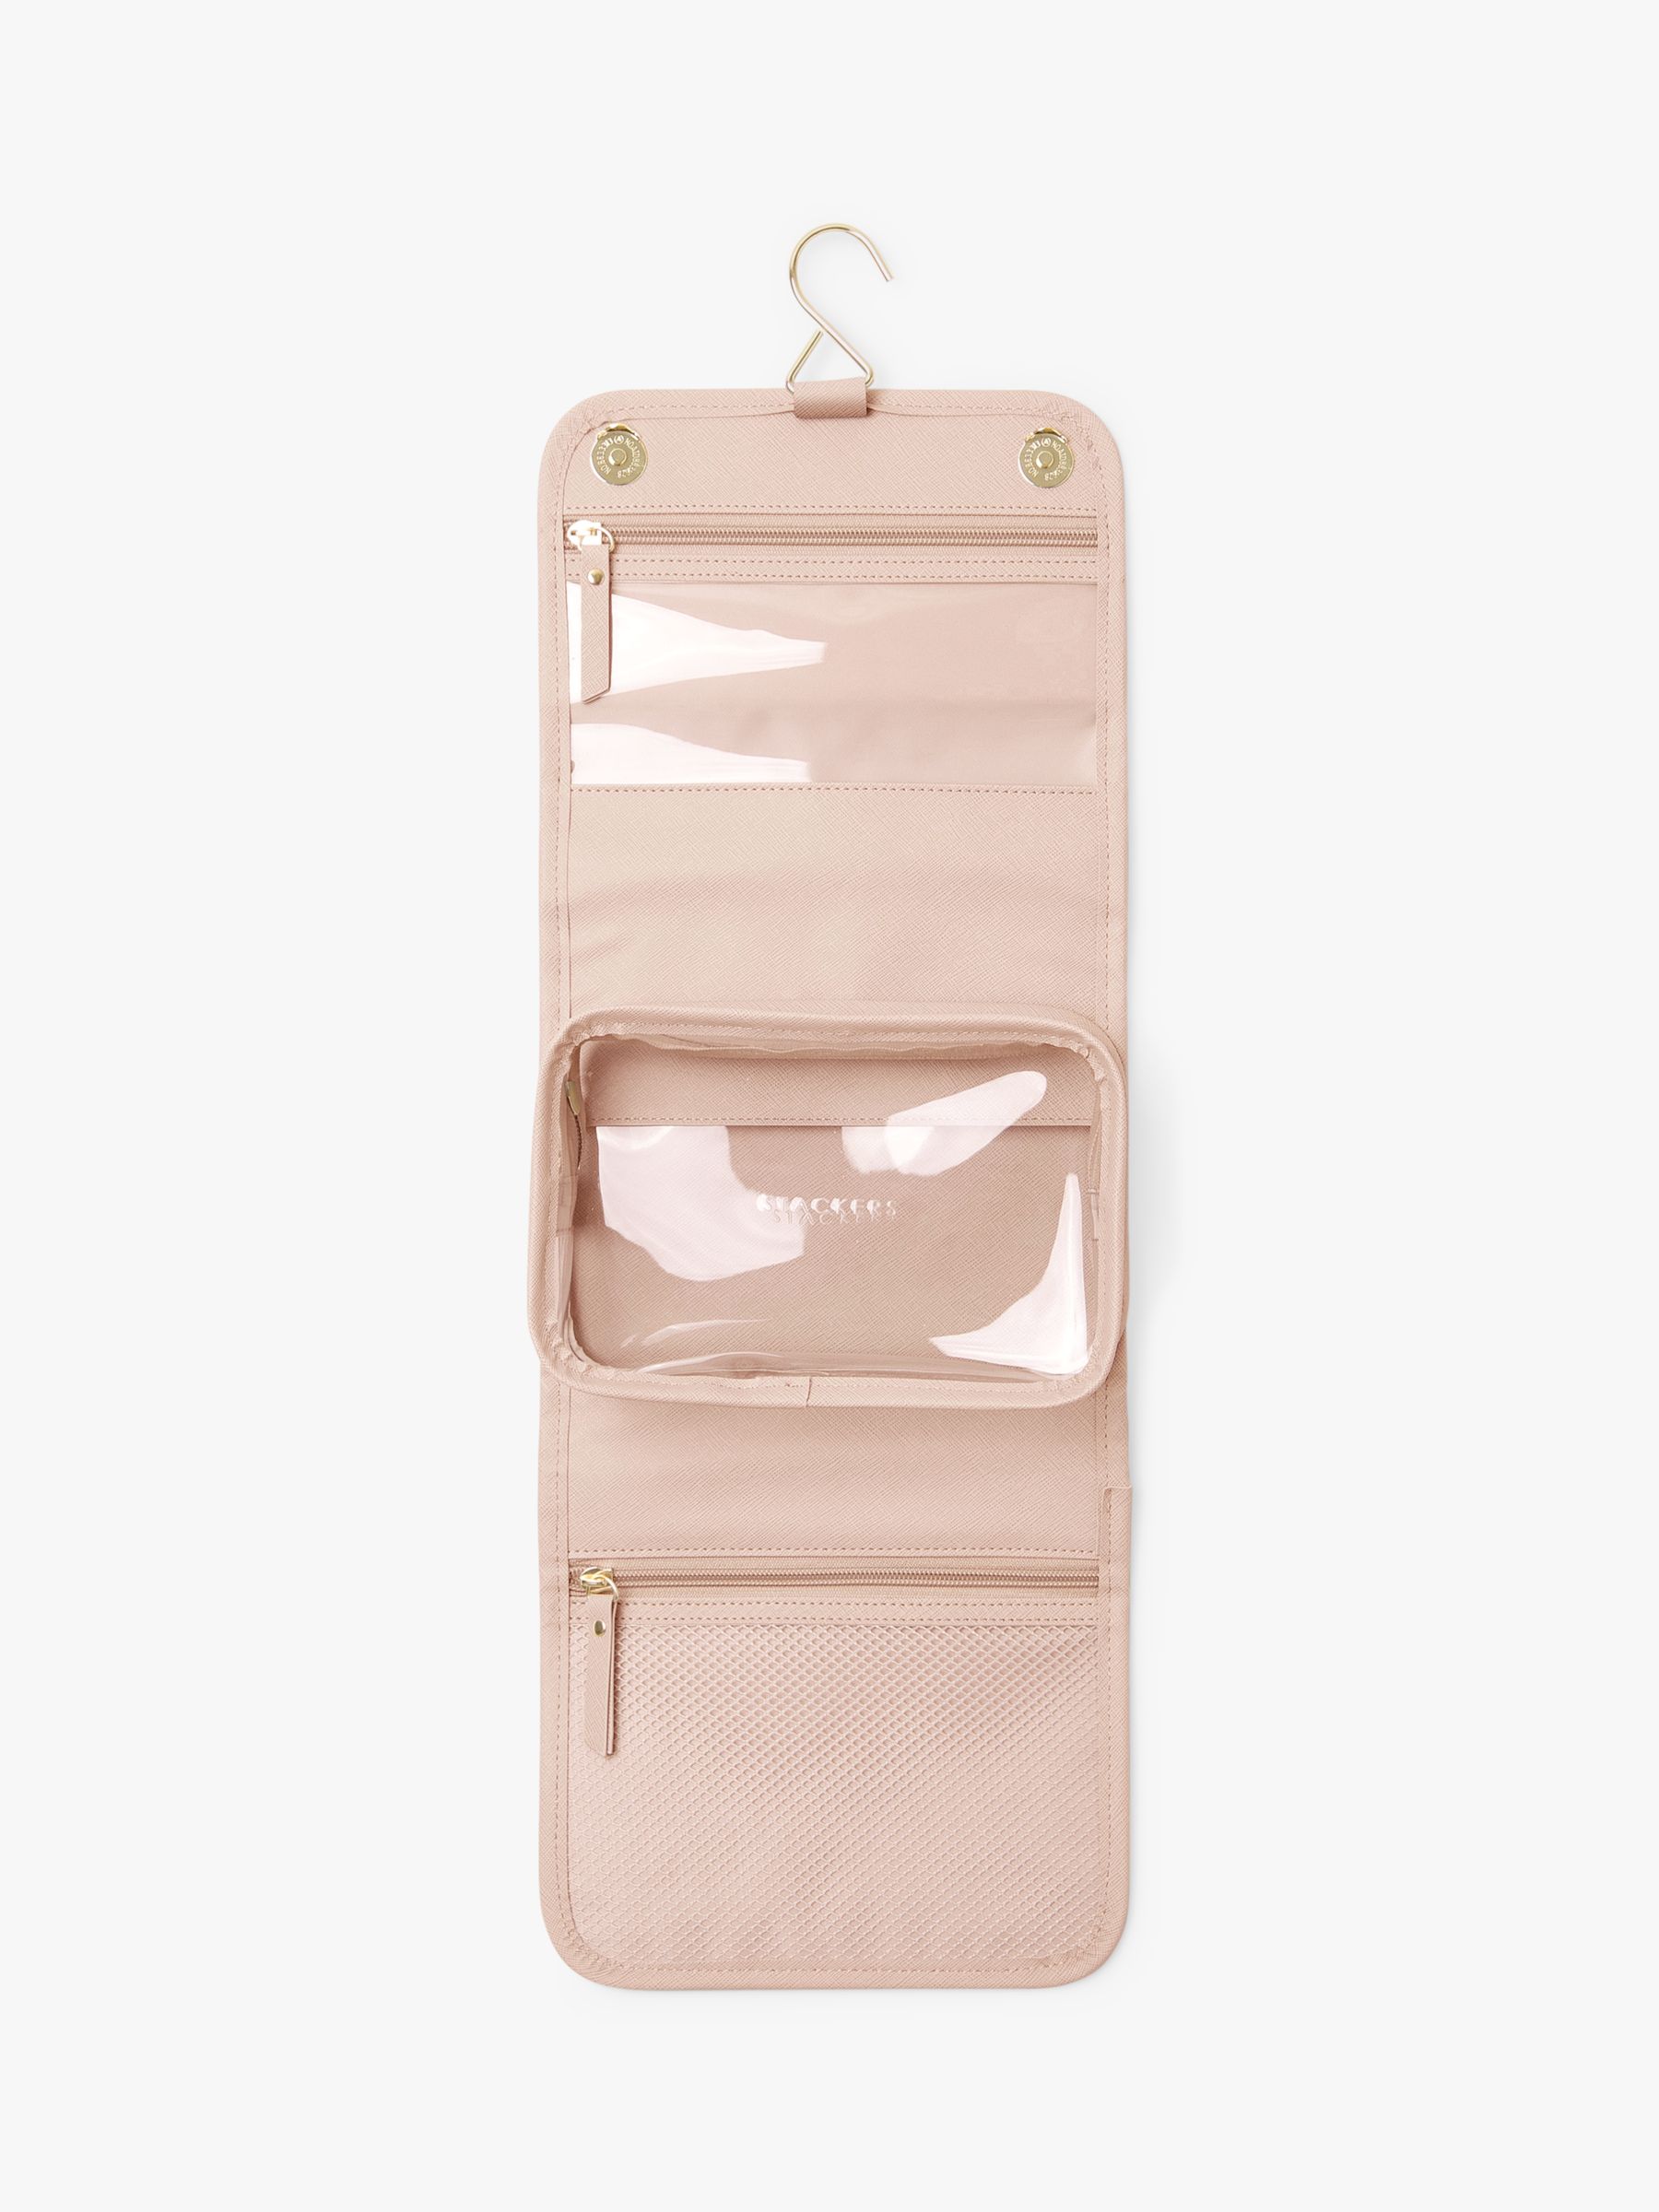 Stackers Travel Hanging Wash Bag, Blush Pink